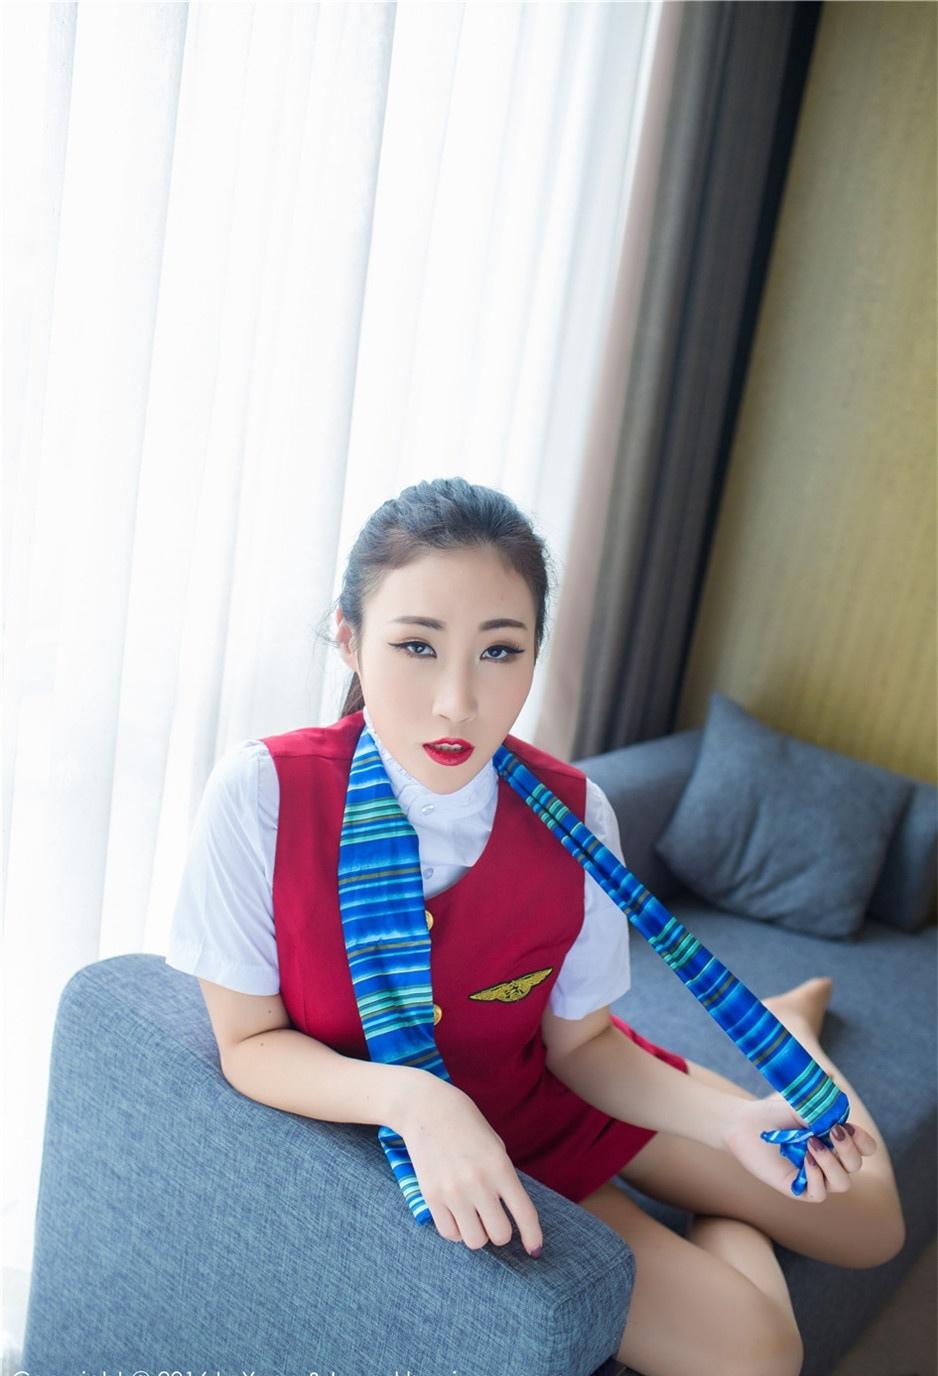 空姐美女Wendy智秀高清时尚性感图片